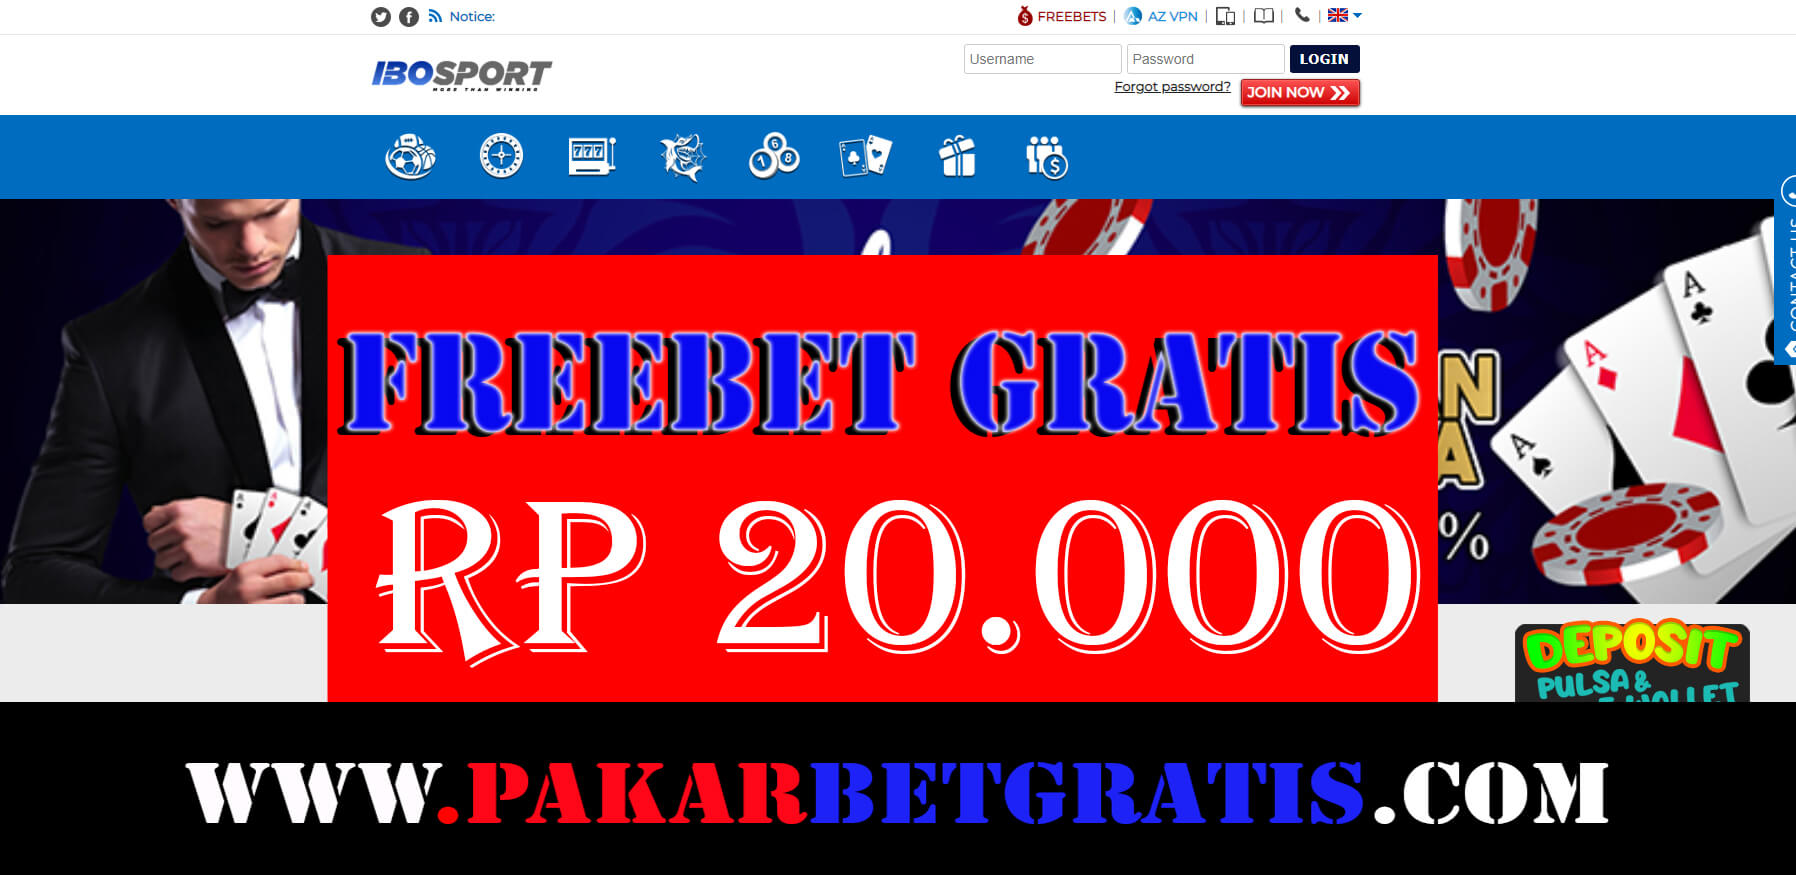 Freebet gratis ibosport Rp 20.000 Tanpa Deposit